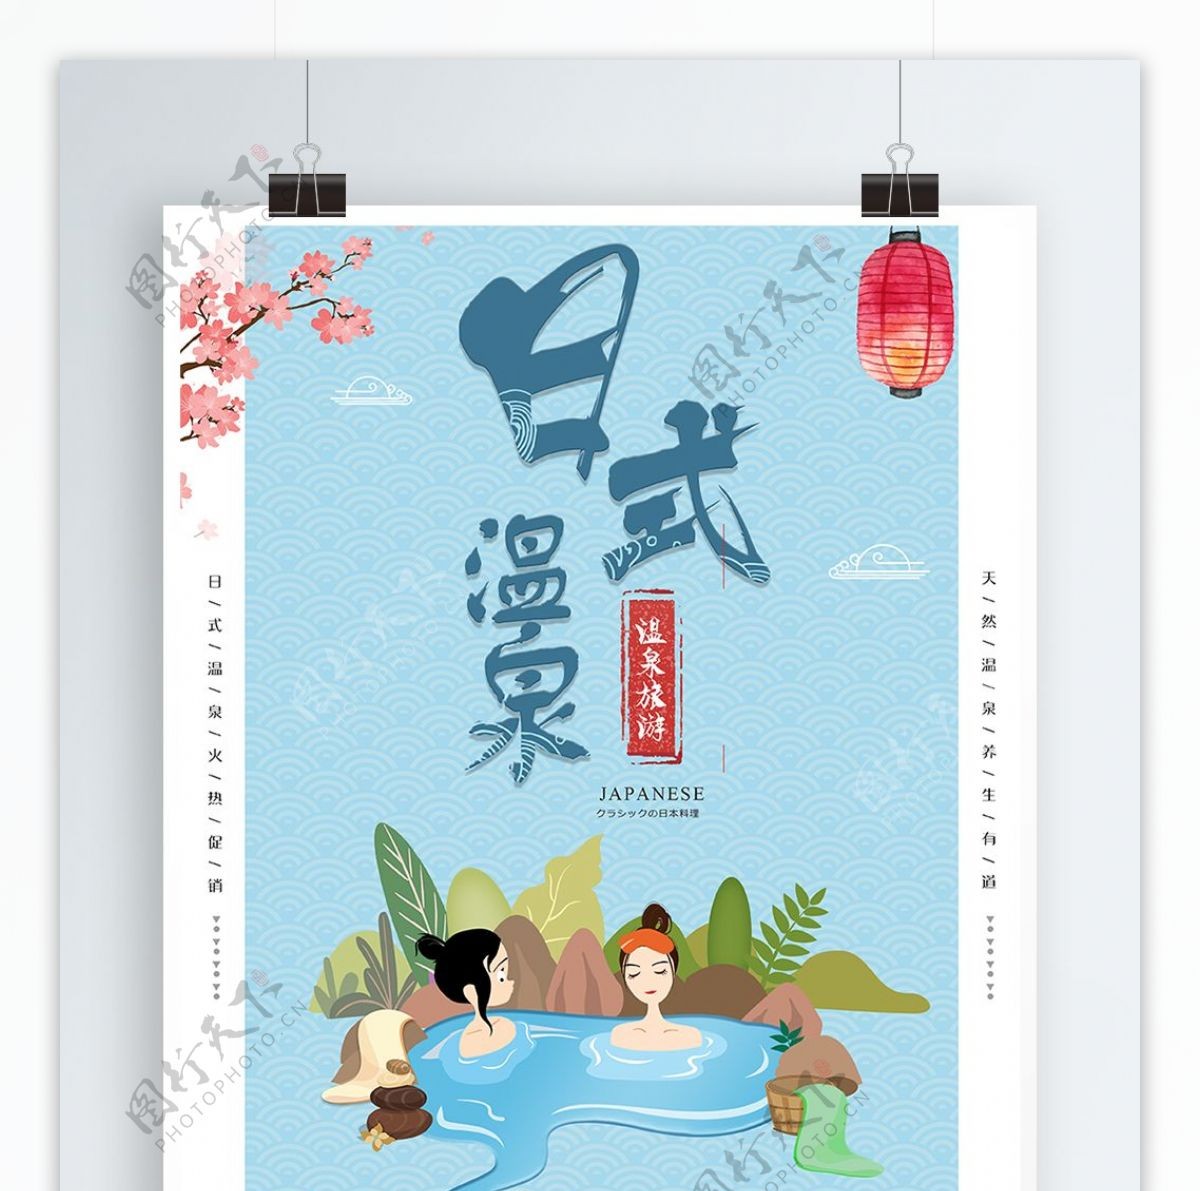 简约日式旅游温泉海报设计模板